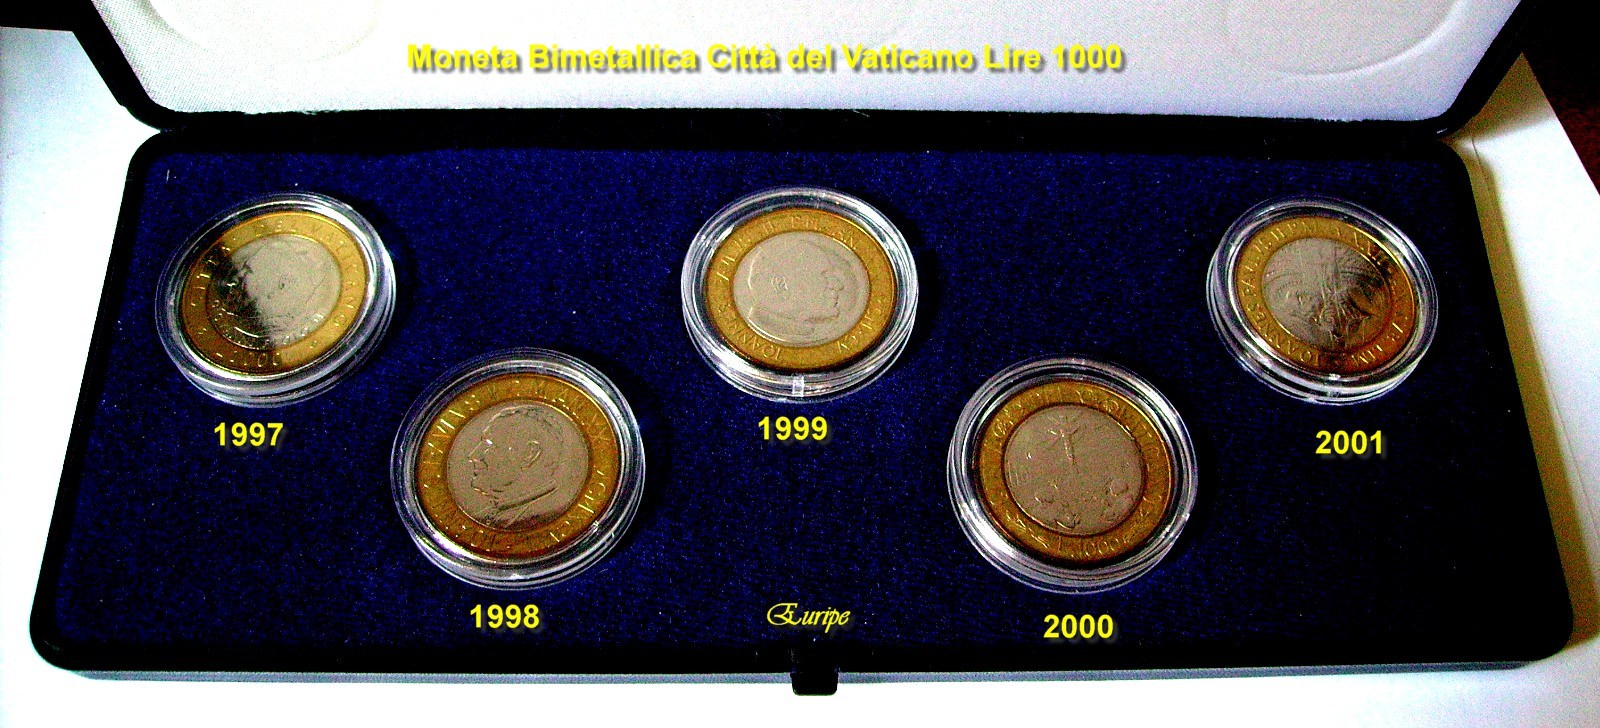 Collezione completa delle 5 monete bimetalliche da 1000 lire emesse dalla Città del Vaticano